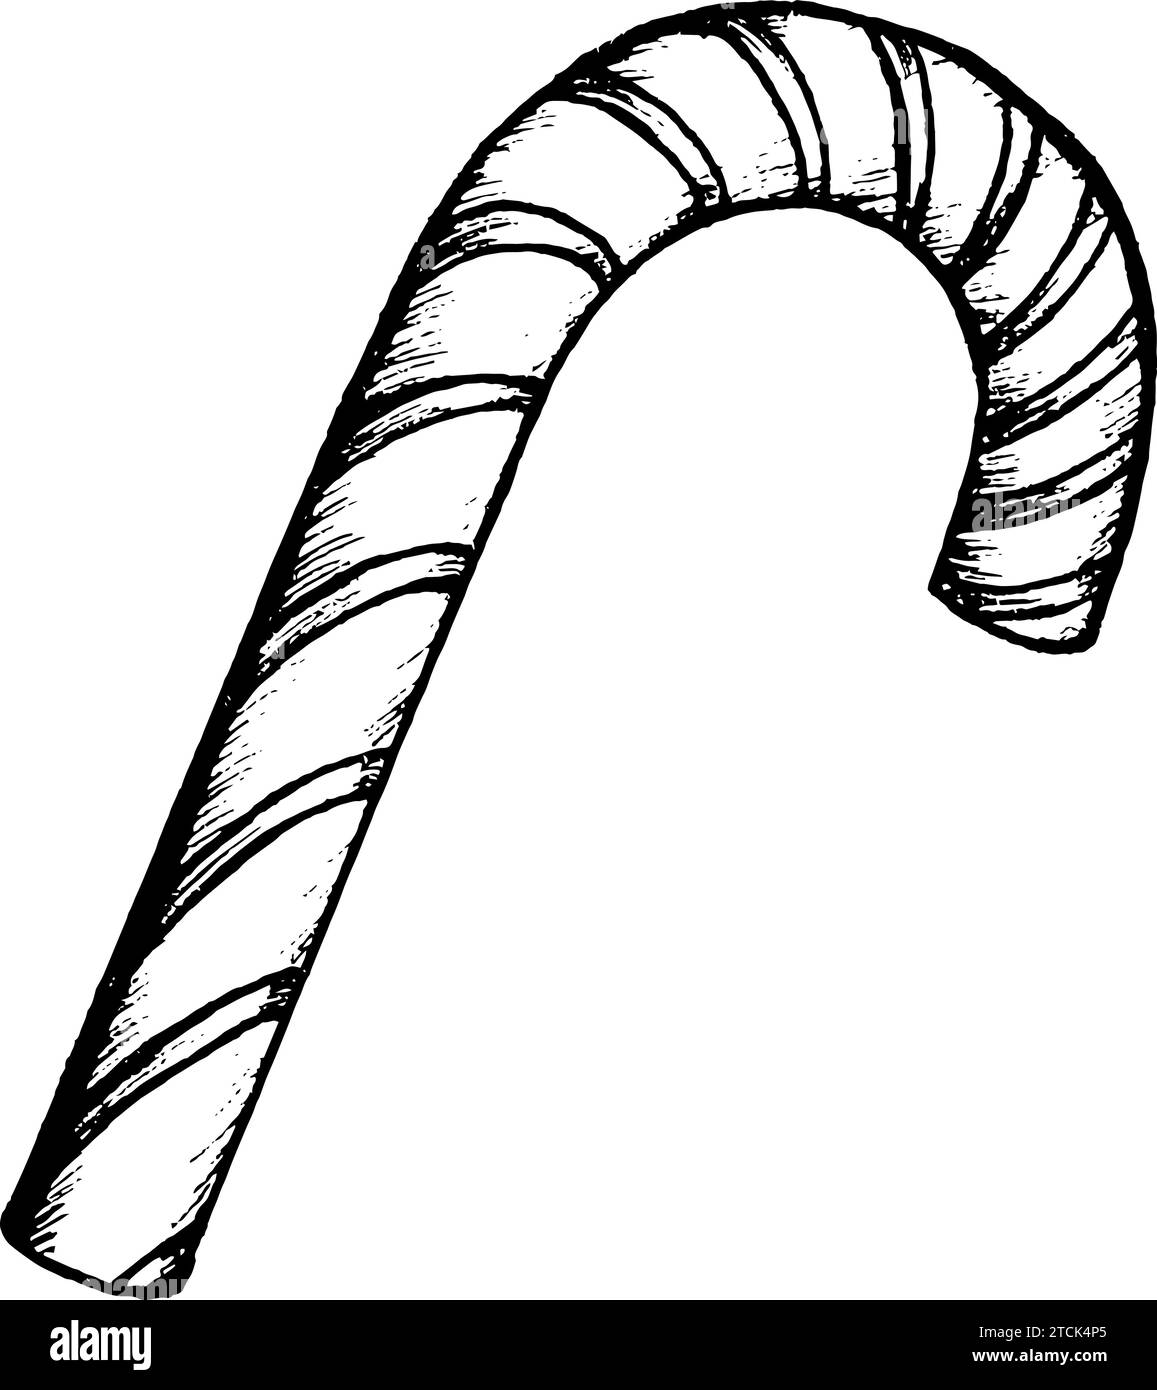 Vektor-Schwarz-weiß-Illustration von Zuckerrohr, handgezeichnetes Zuckerrohr. Stock Vektor